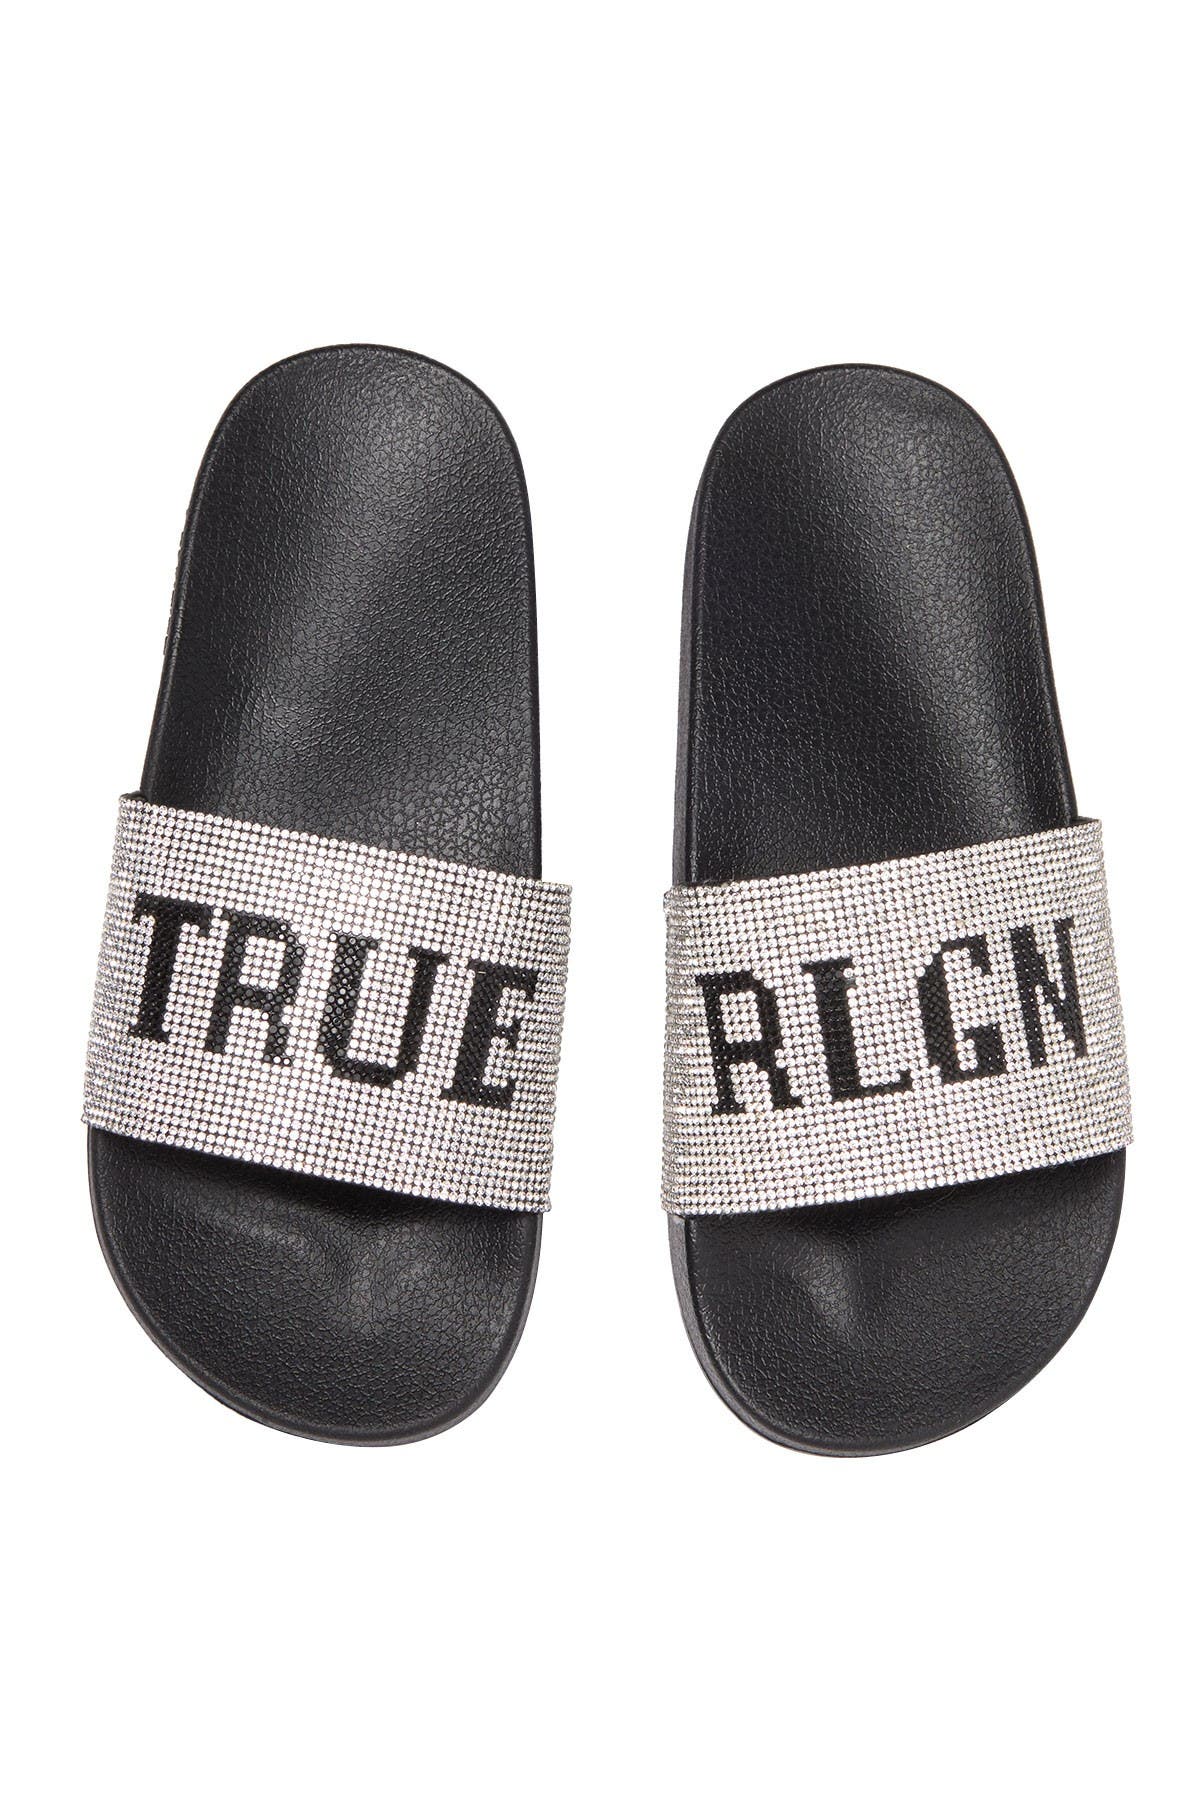 true religion men's slide sandals